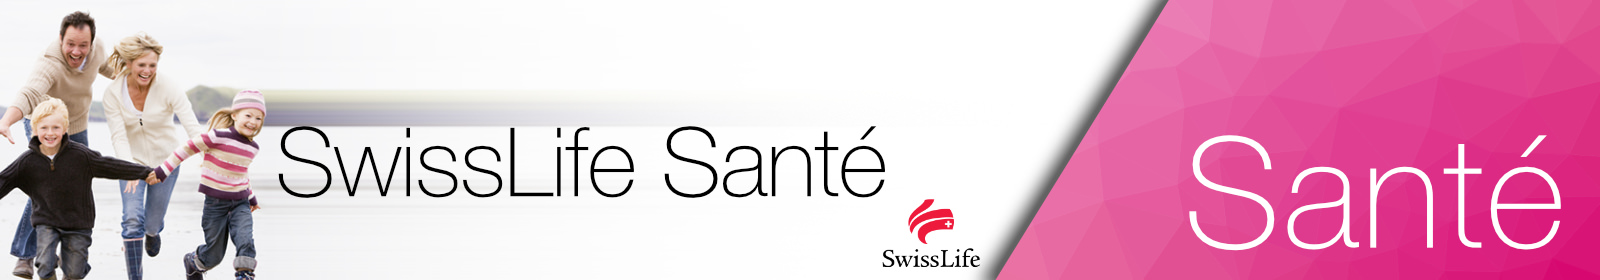 Swisslife Santéle bon choix santé pour toute la famille !